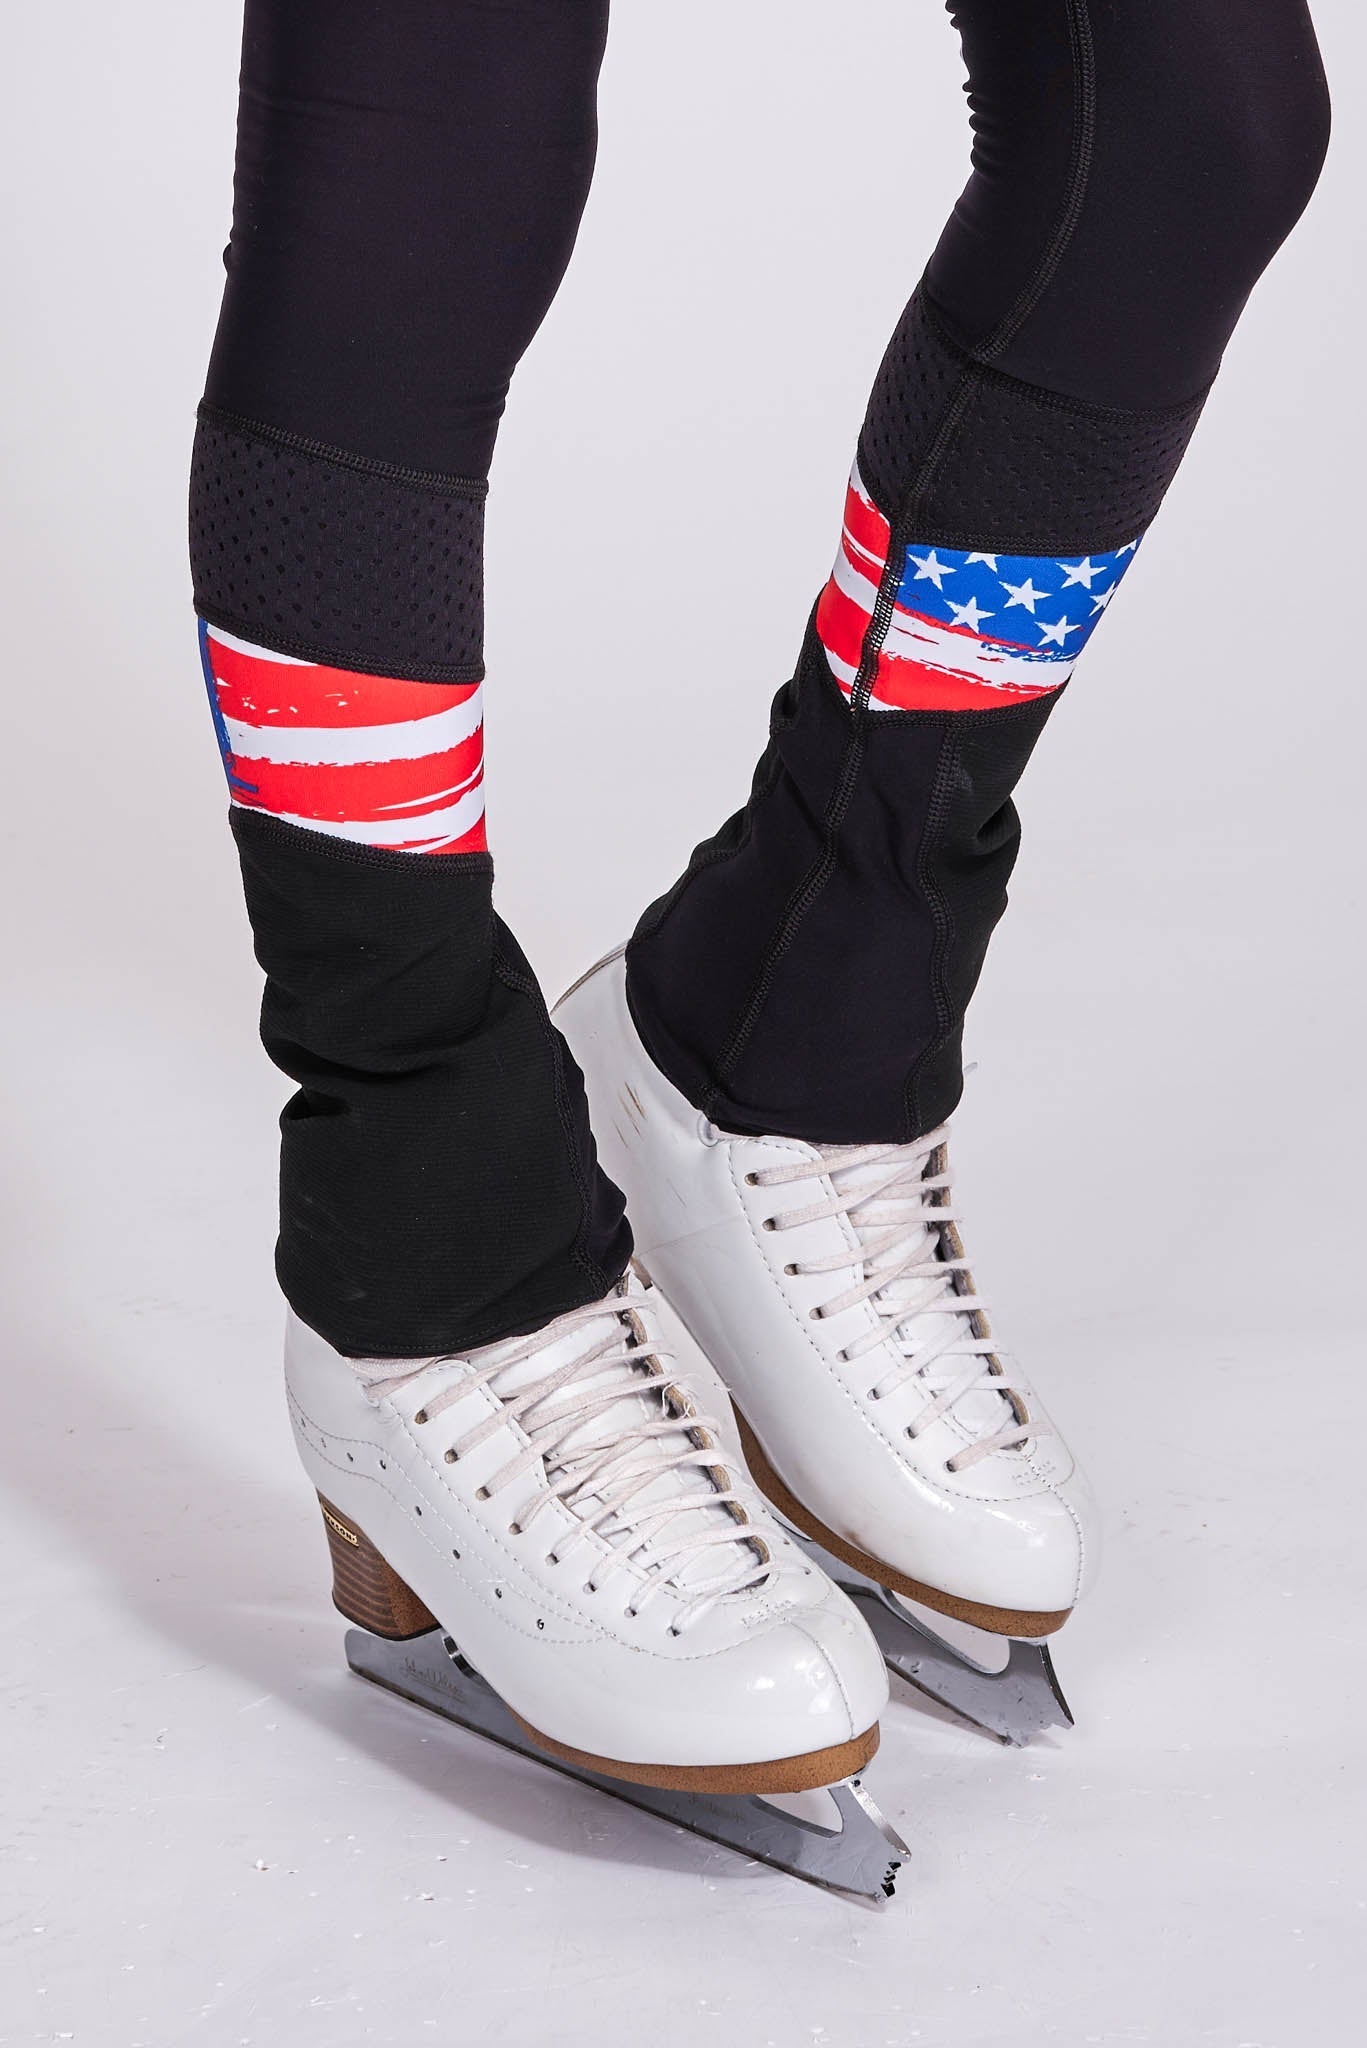 Women's USA Non-Slip Figure Skating Leggings